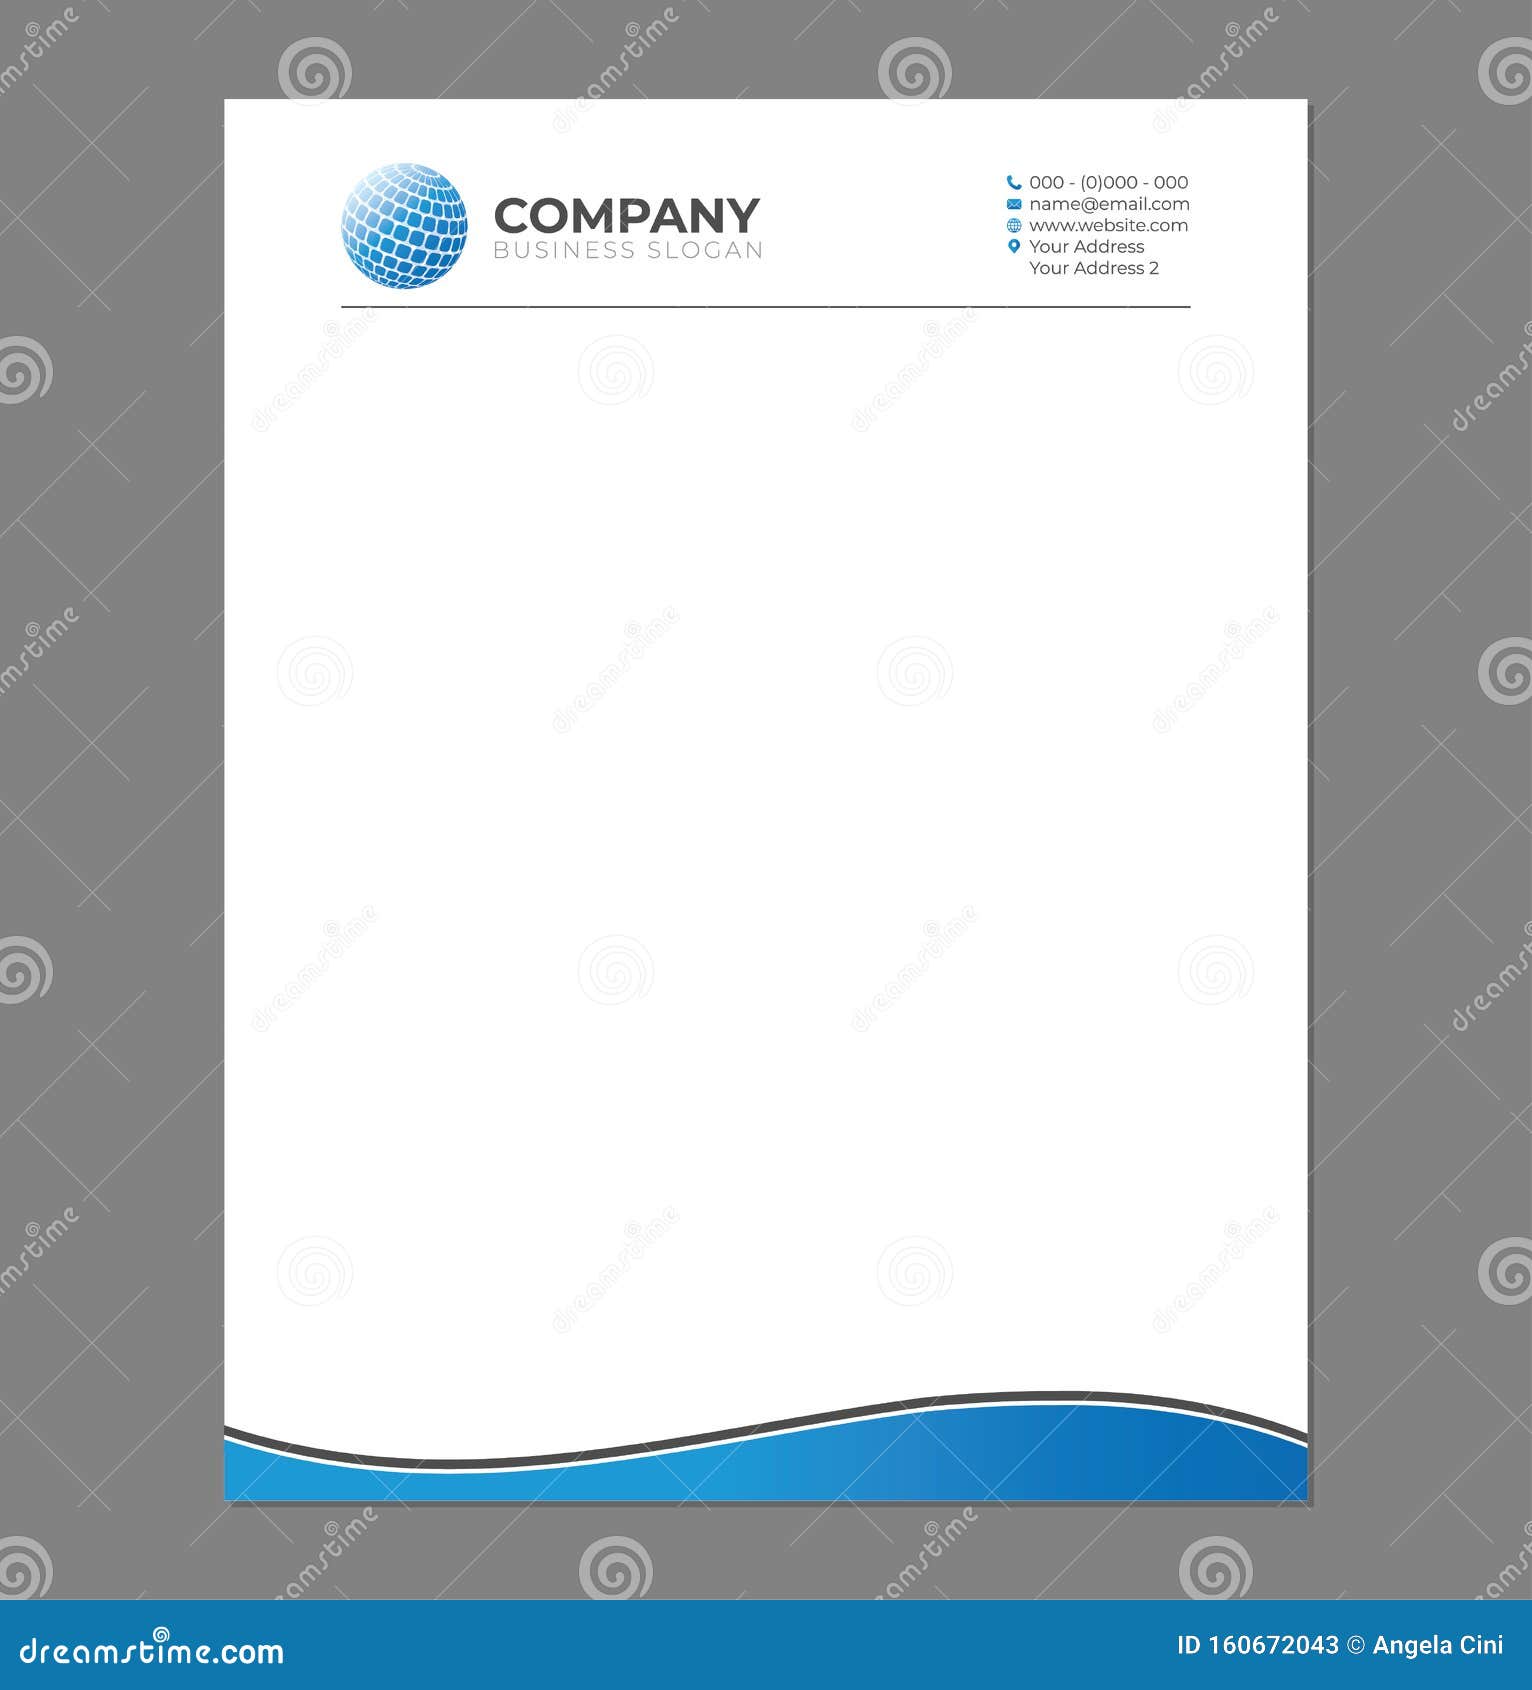 Blank Letterhead Template For Print With Sphere Logo Stock Vector Illustration Of Banner Border 160672043